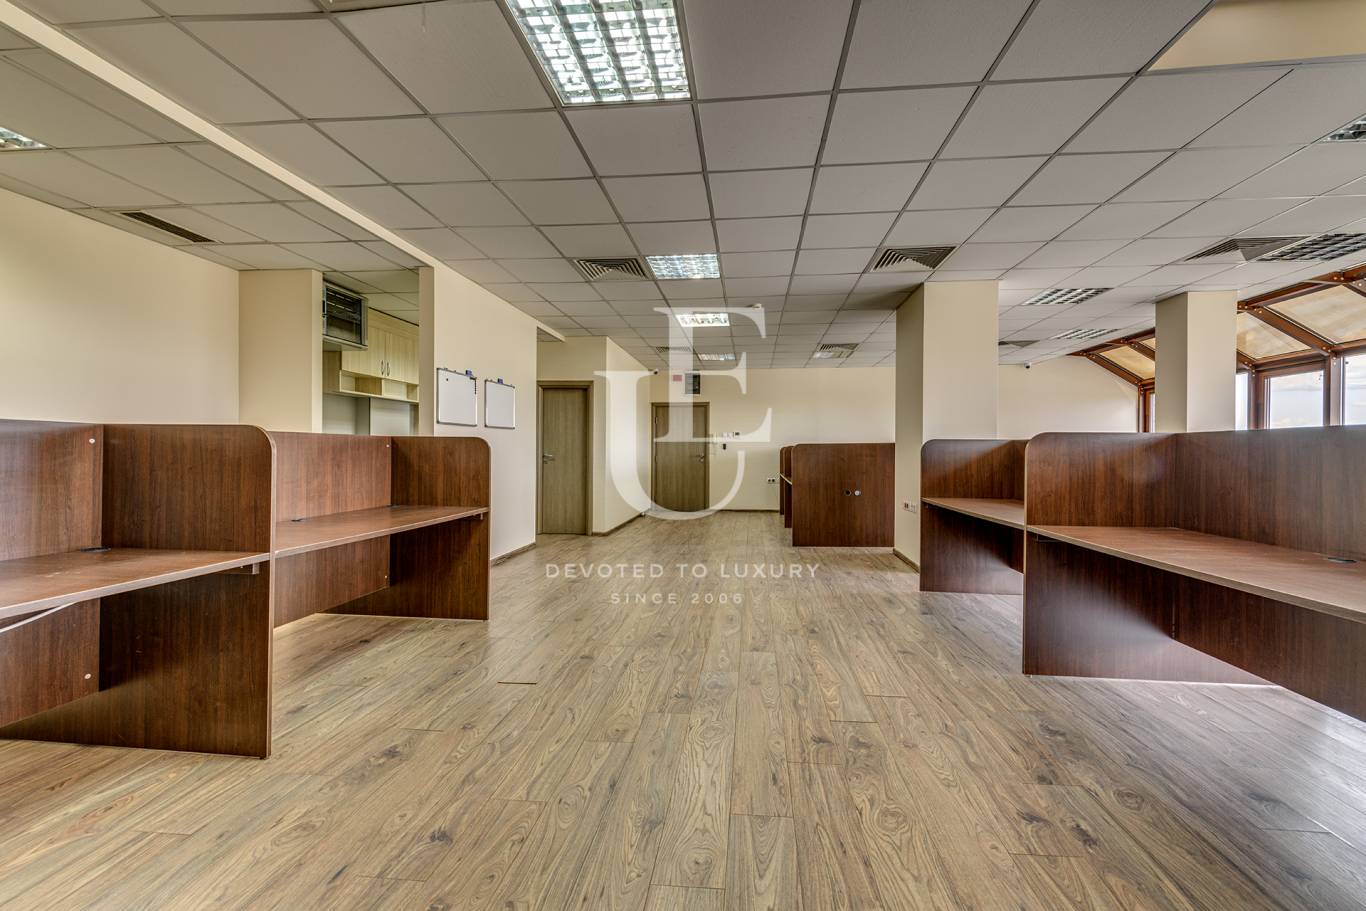 Офис под наем в София, Студентски град - код на имота: N17700 - image 7